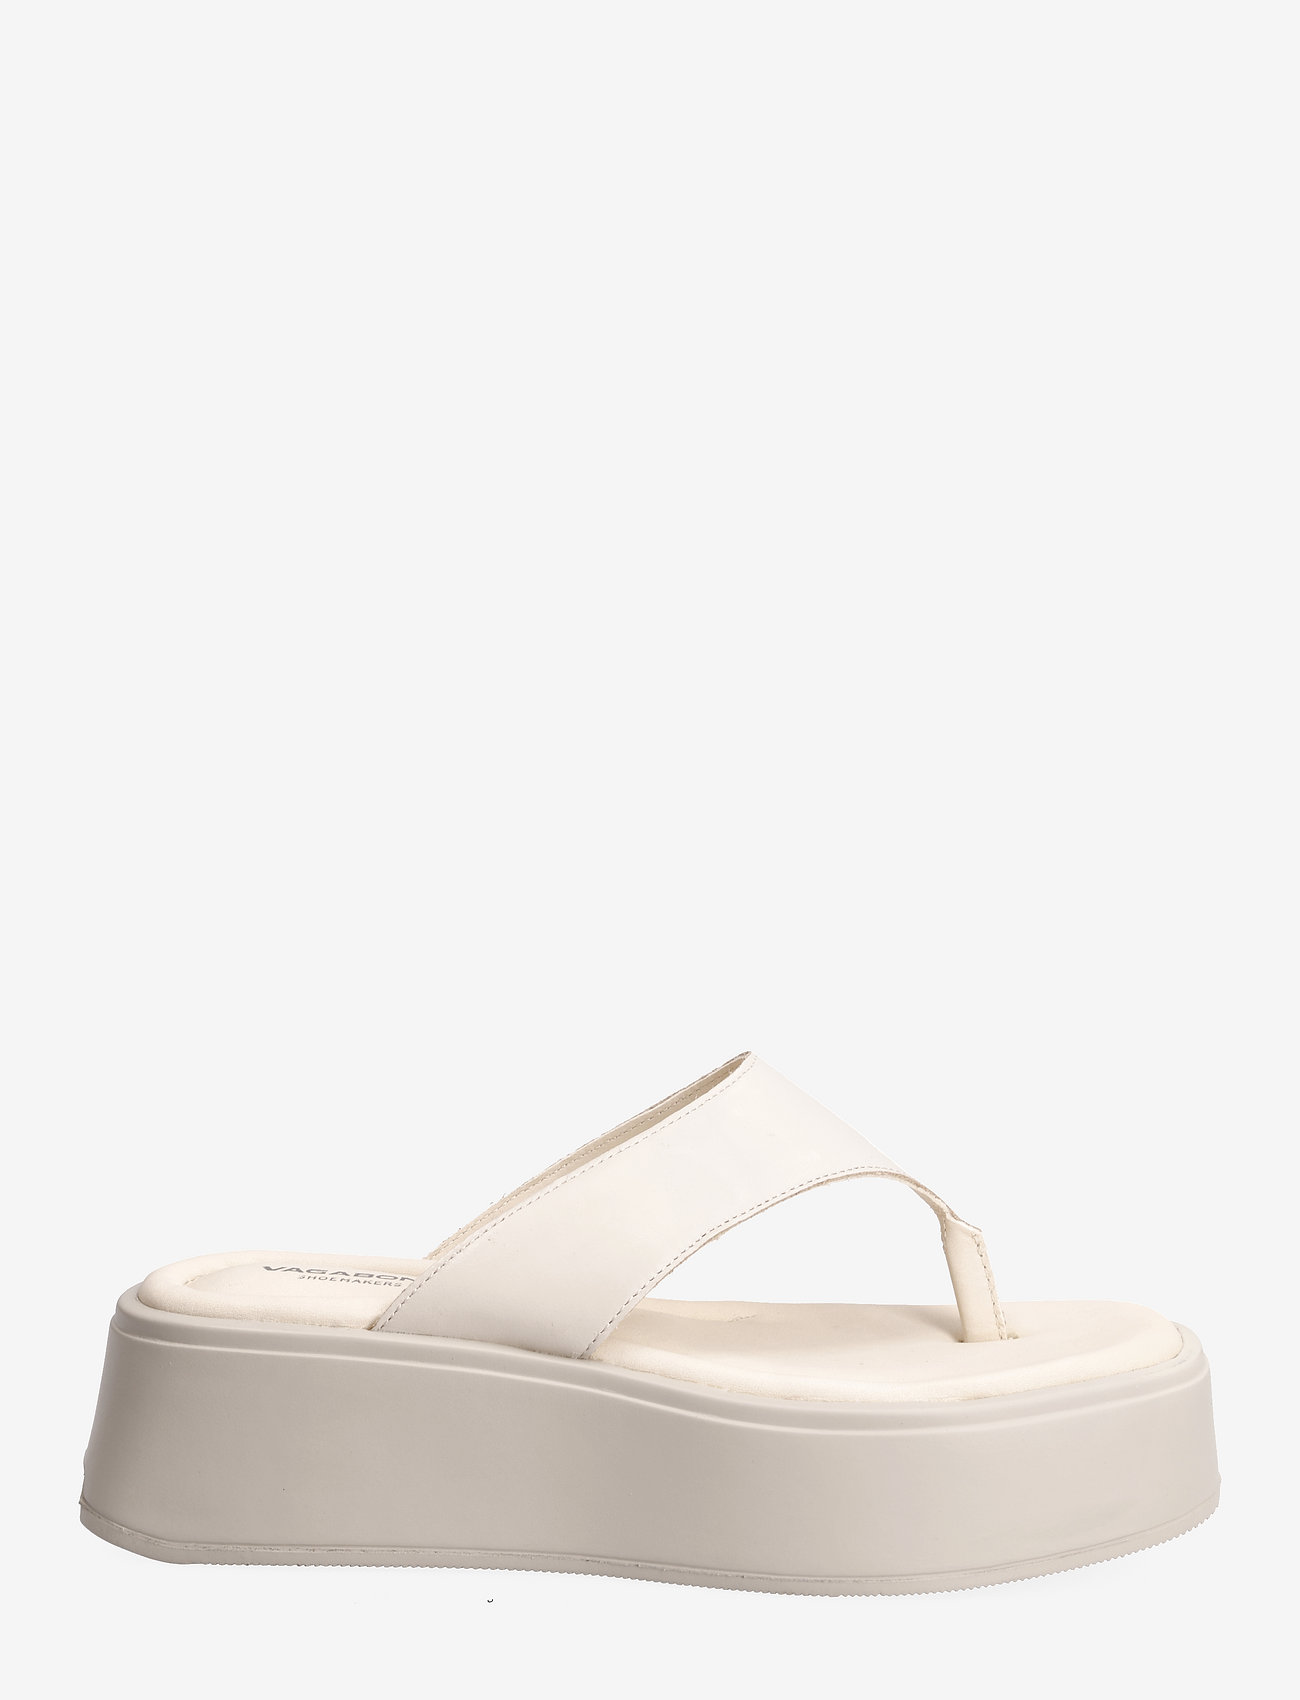 VAGABOND - COURTNEY - platform sandals - off white - 1